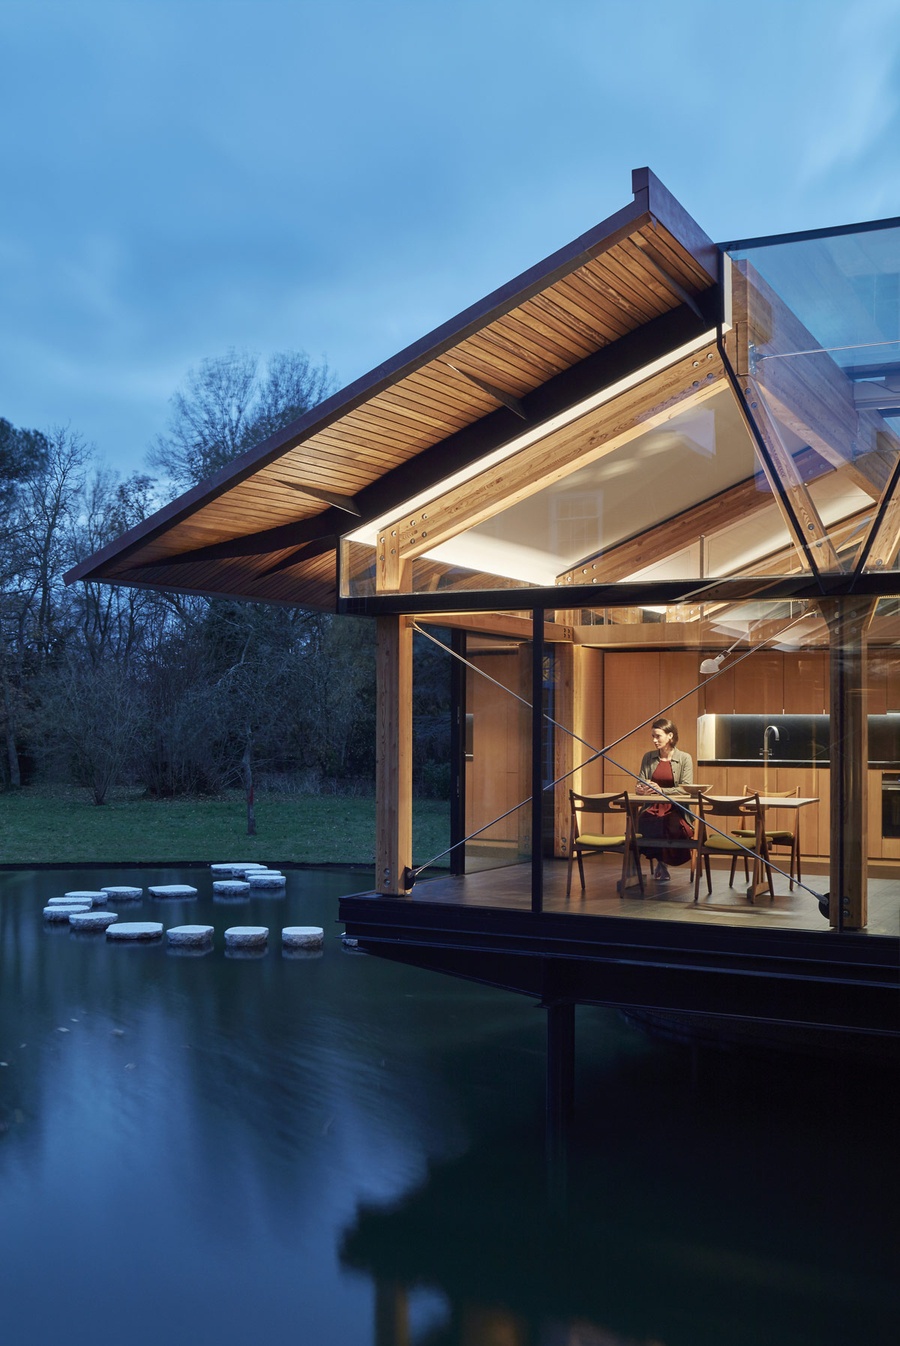 Ngôi nhà được thiết kế trên bề mặt hồ nước đầy thơ mộng